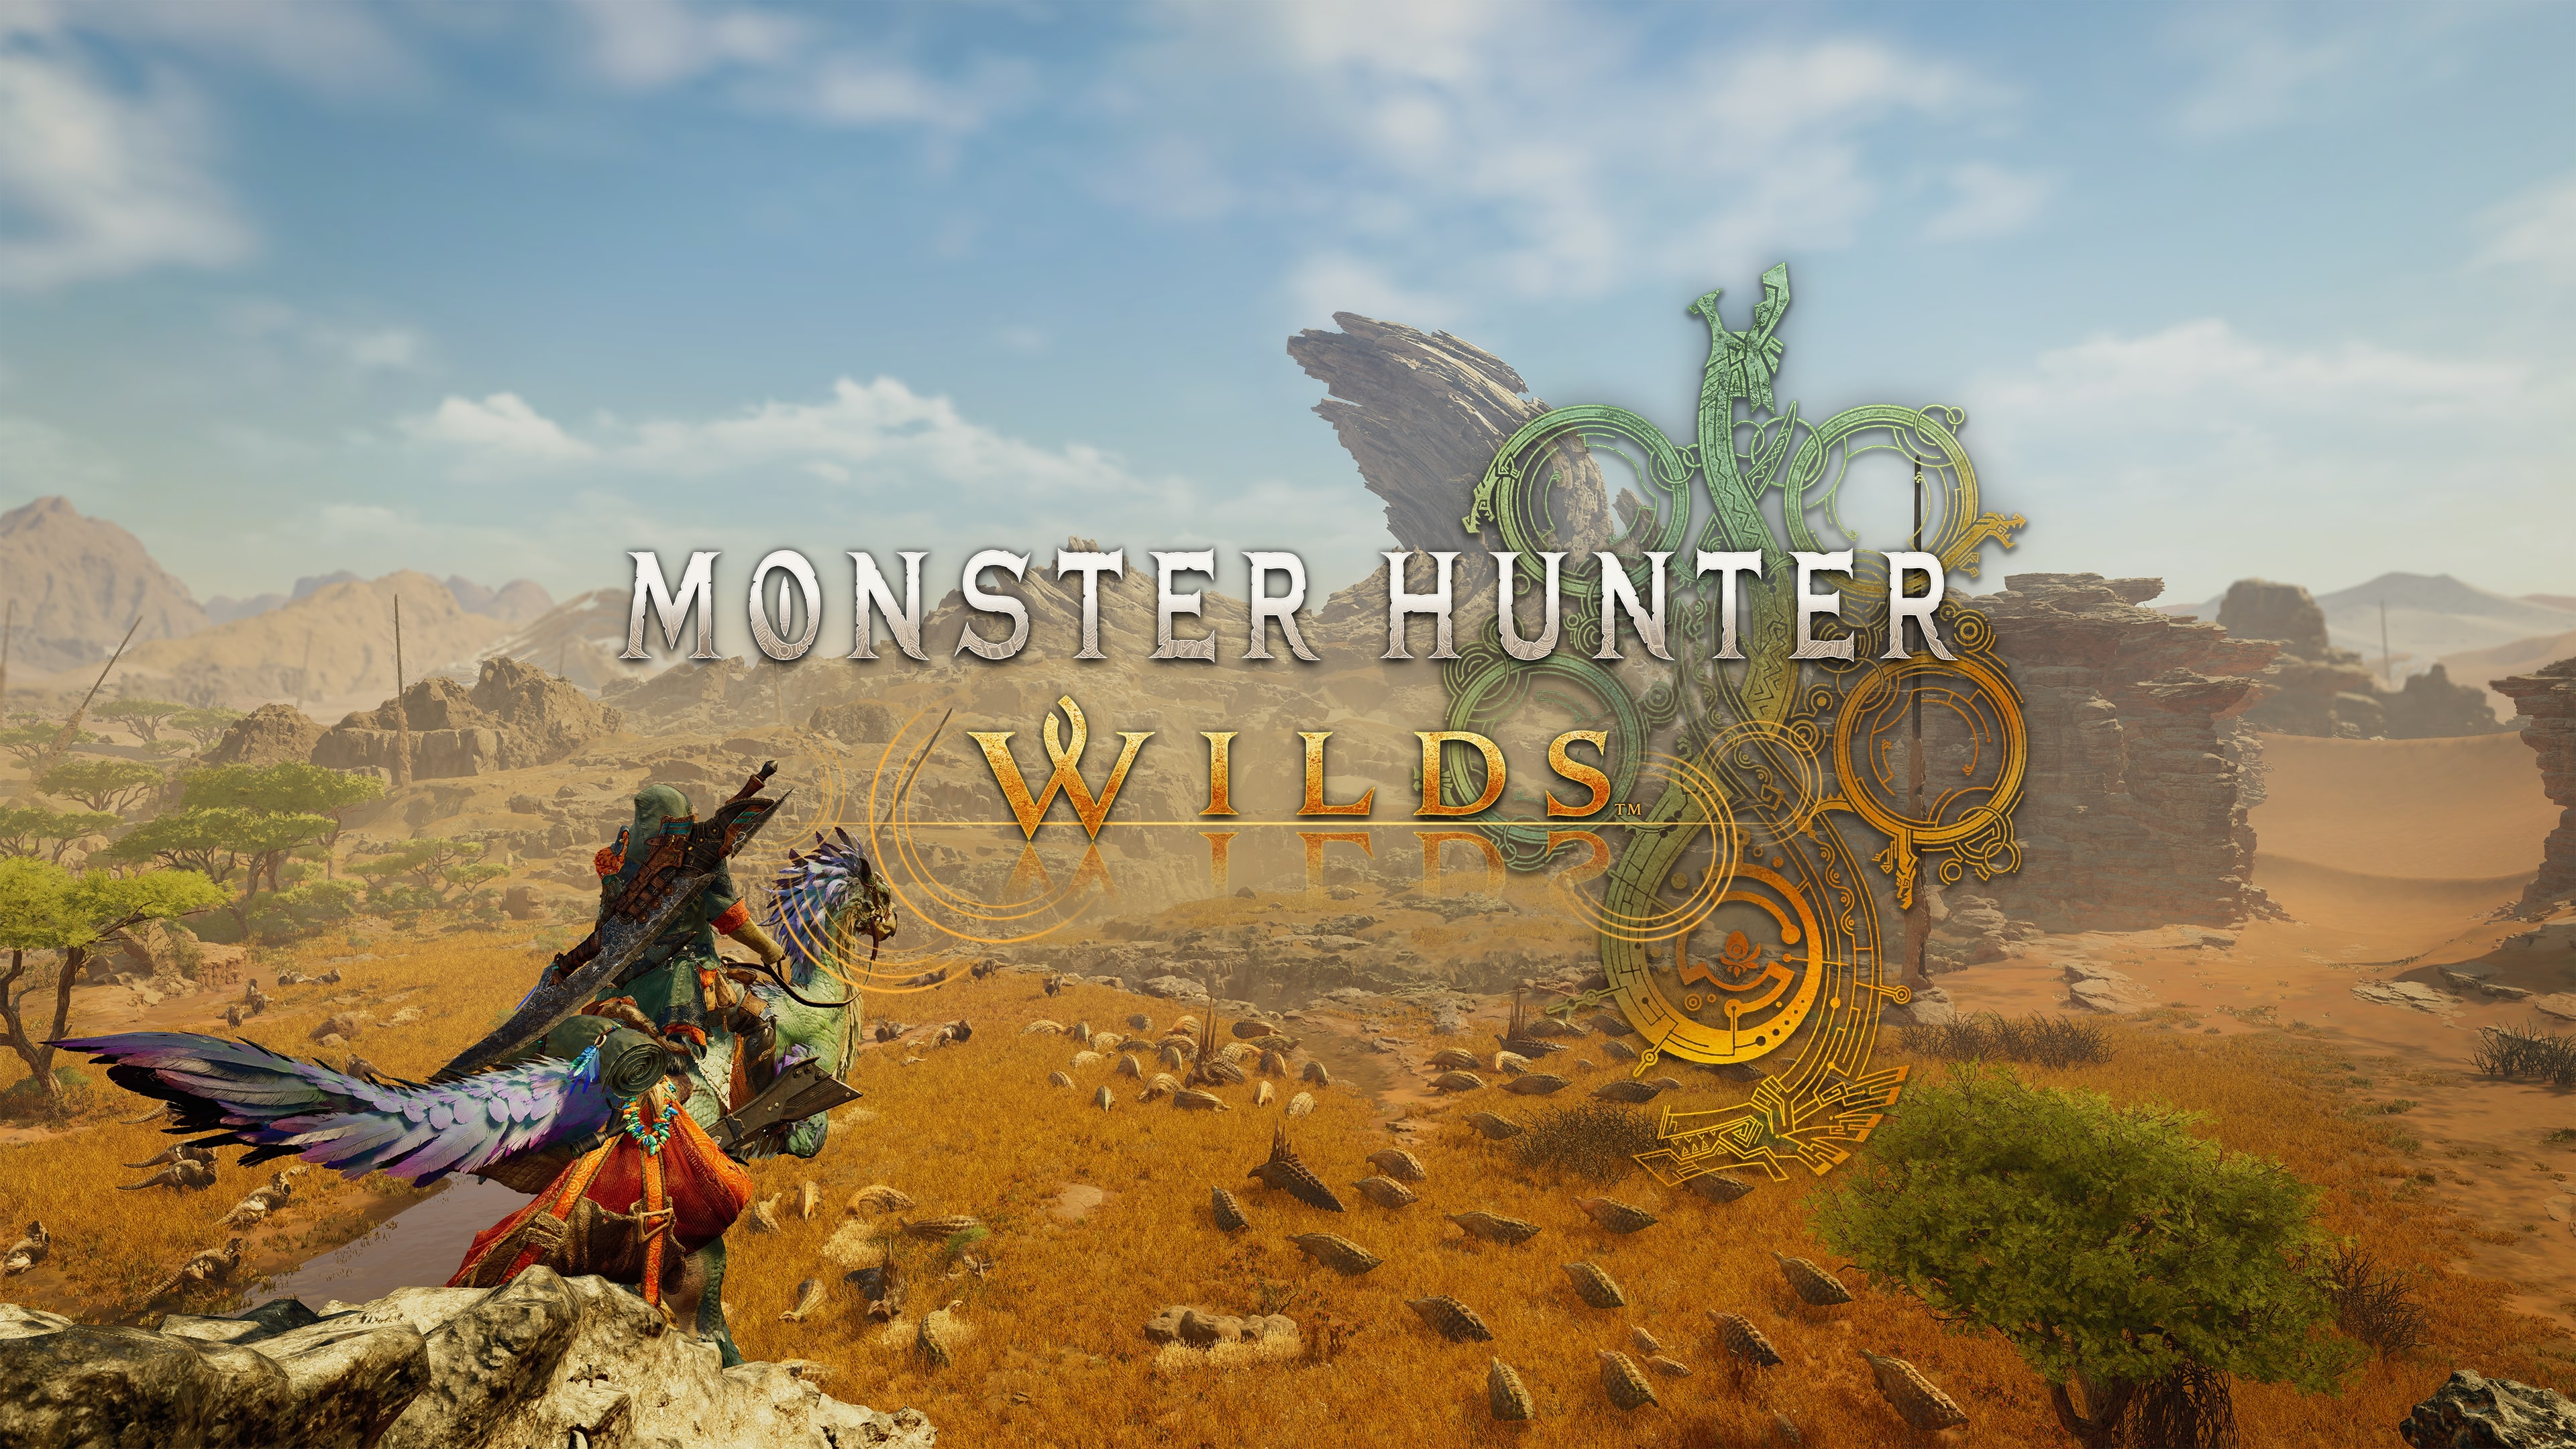 Monster hunter wilds key art logo 18